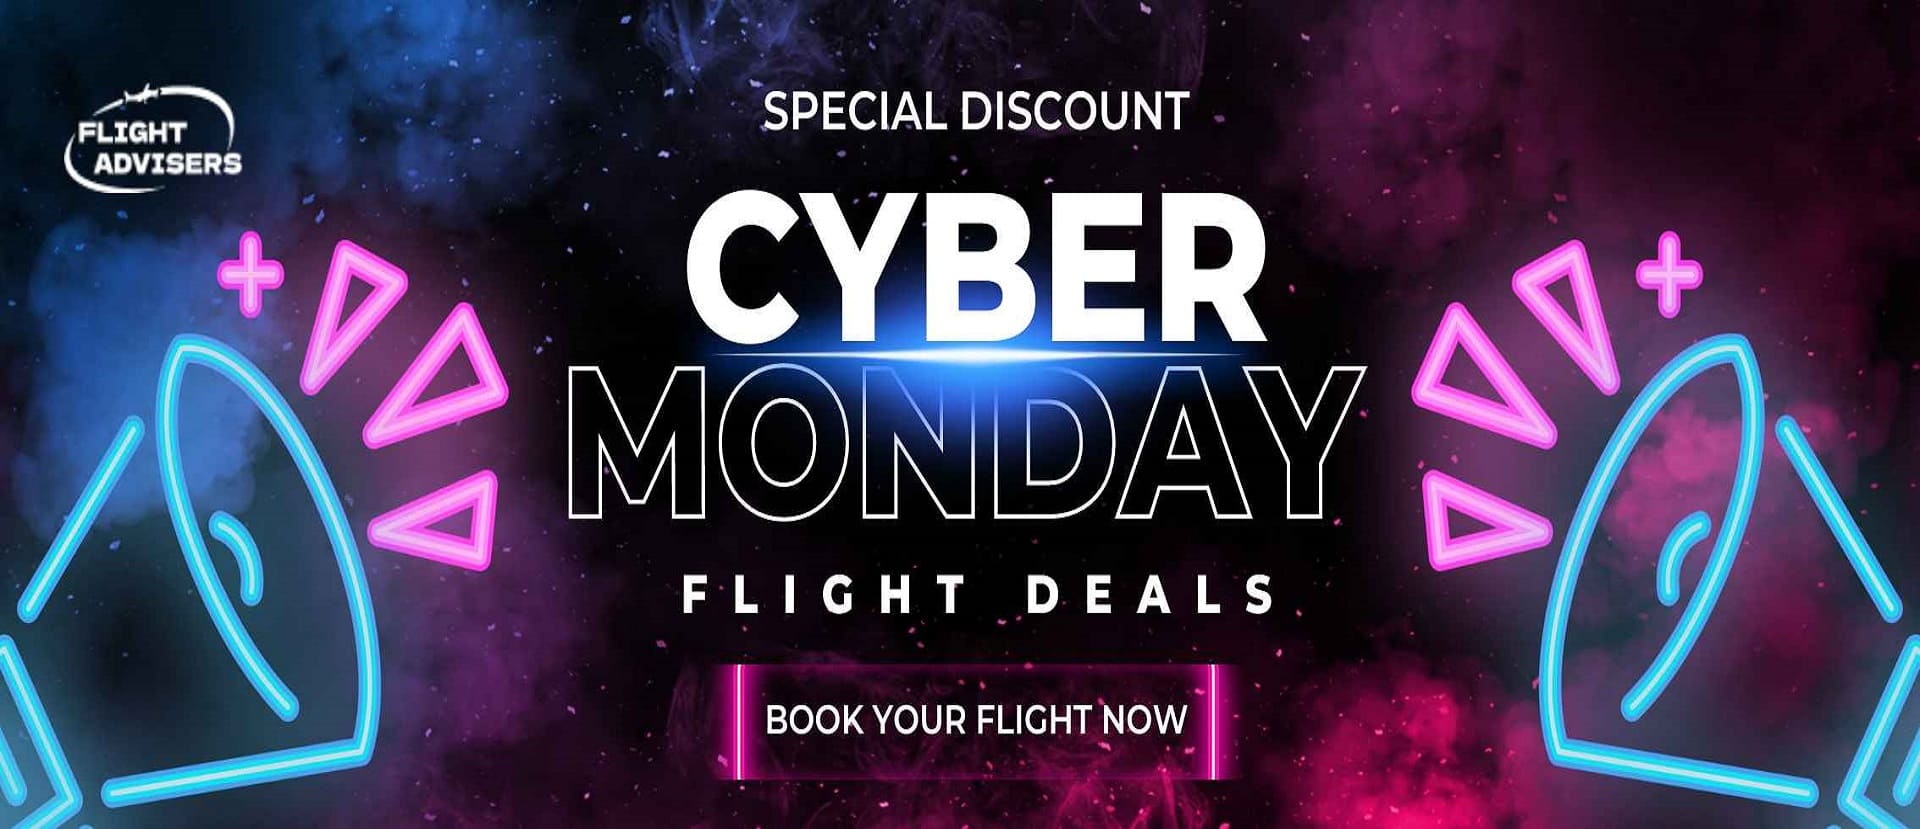 cyber-monday-flight-deals